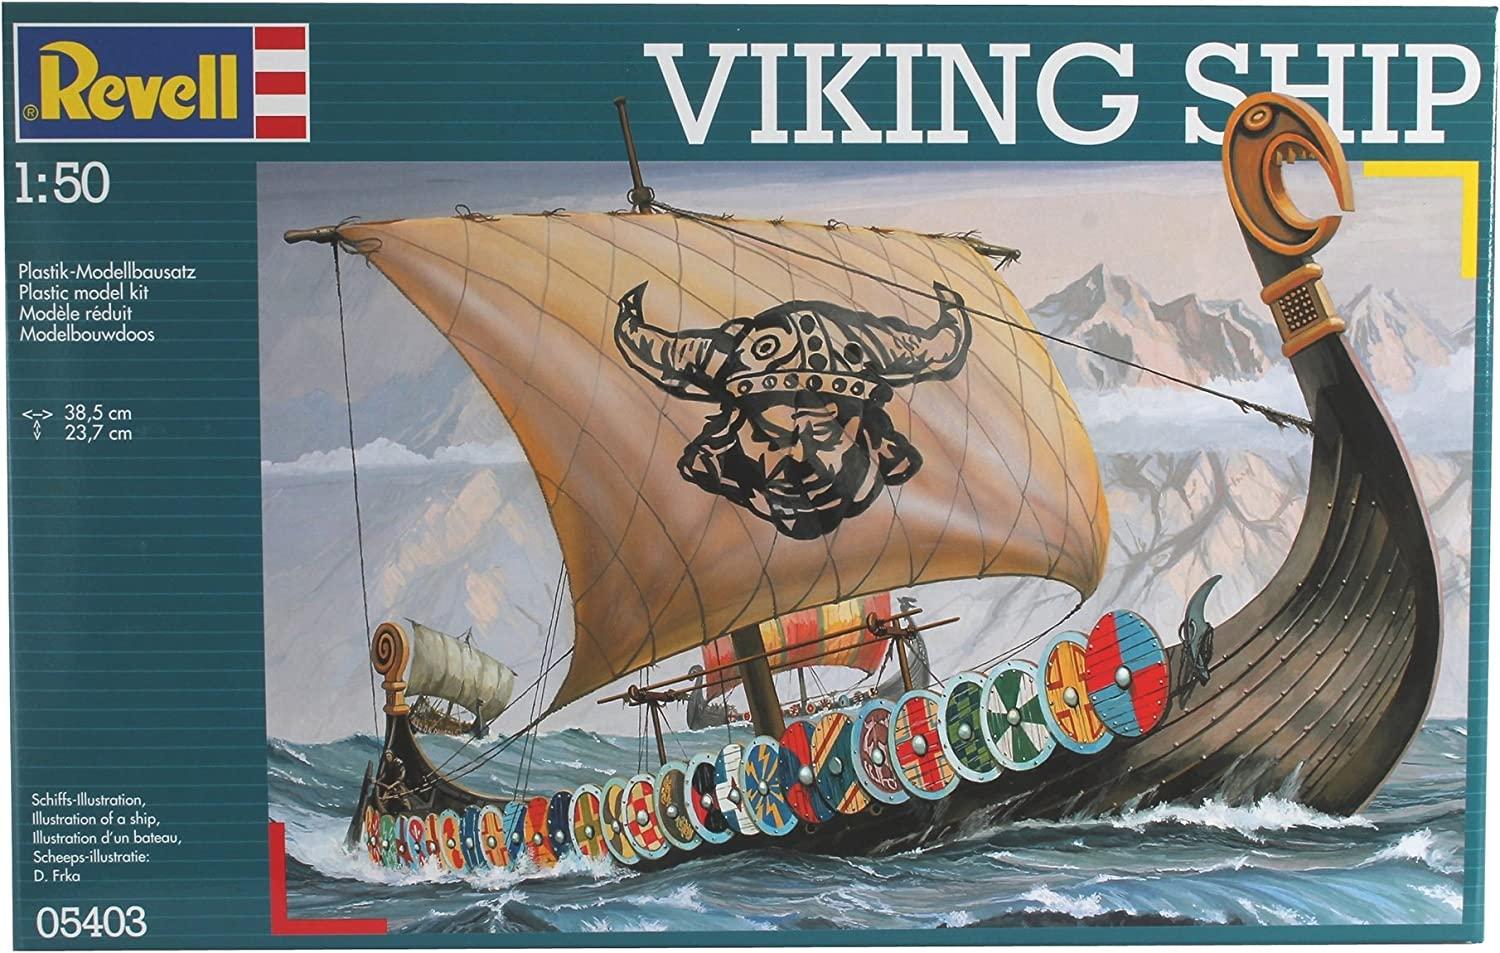 1/50 Vikingo: 32,50 €